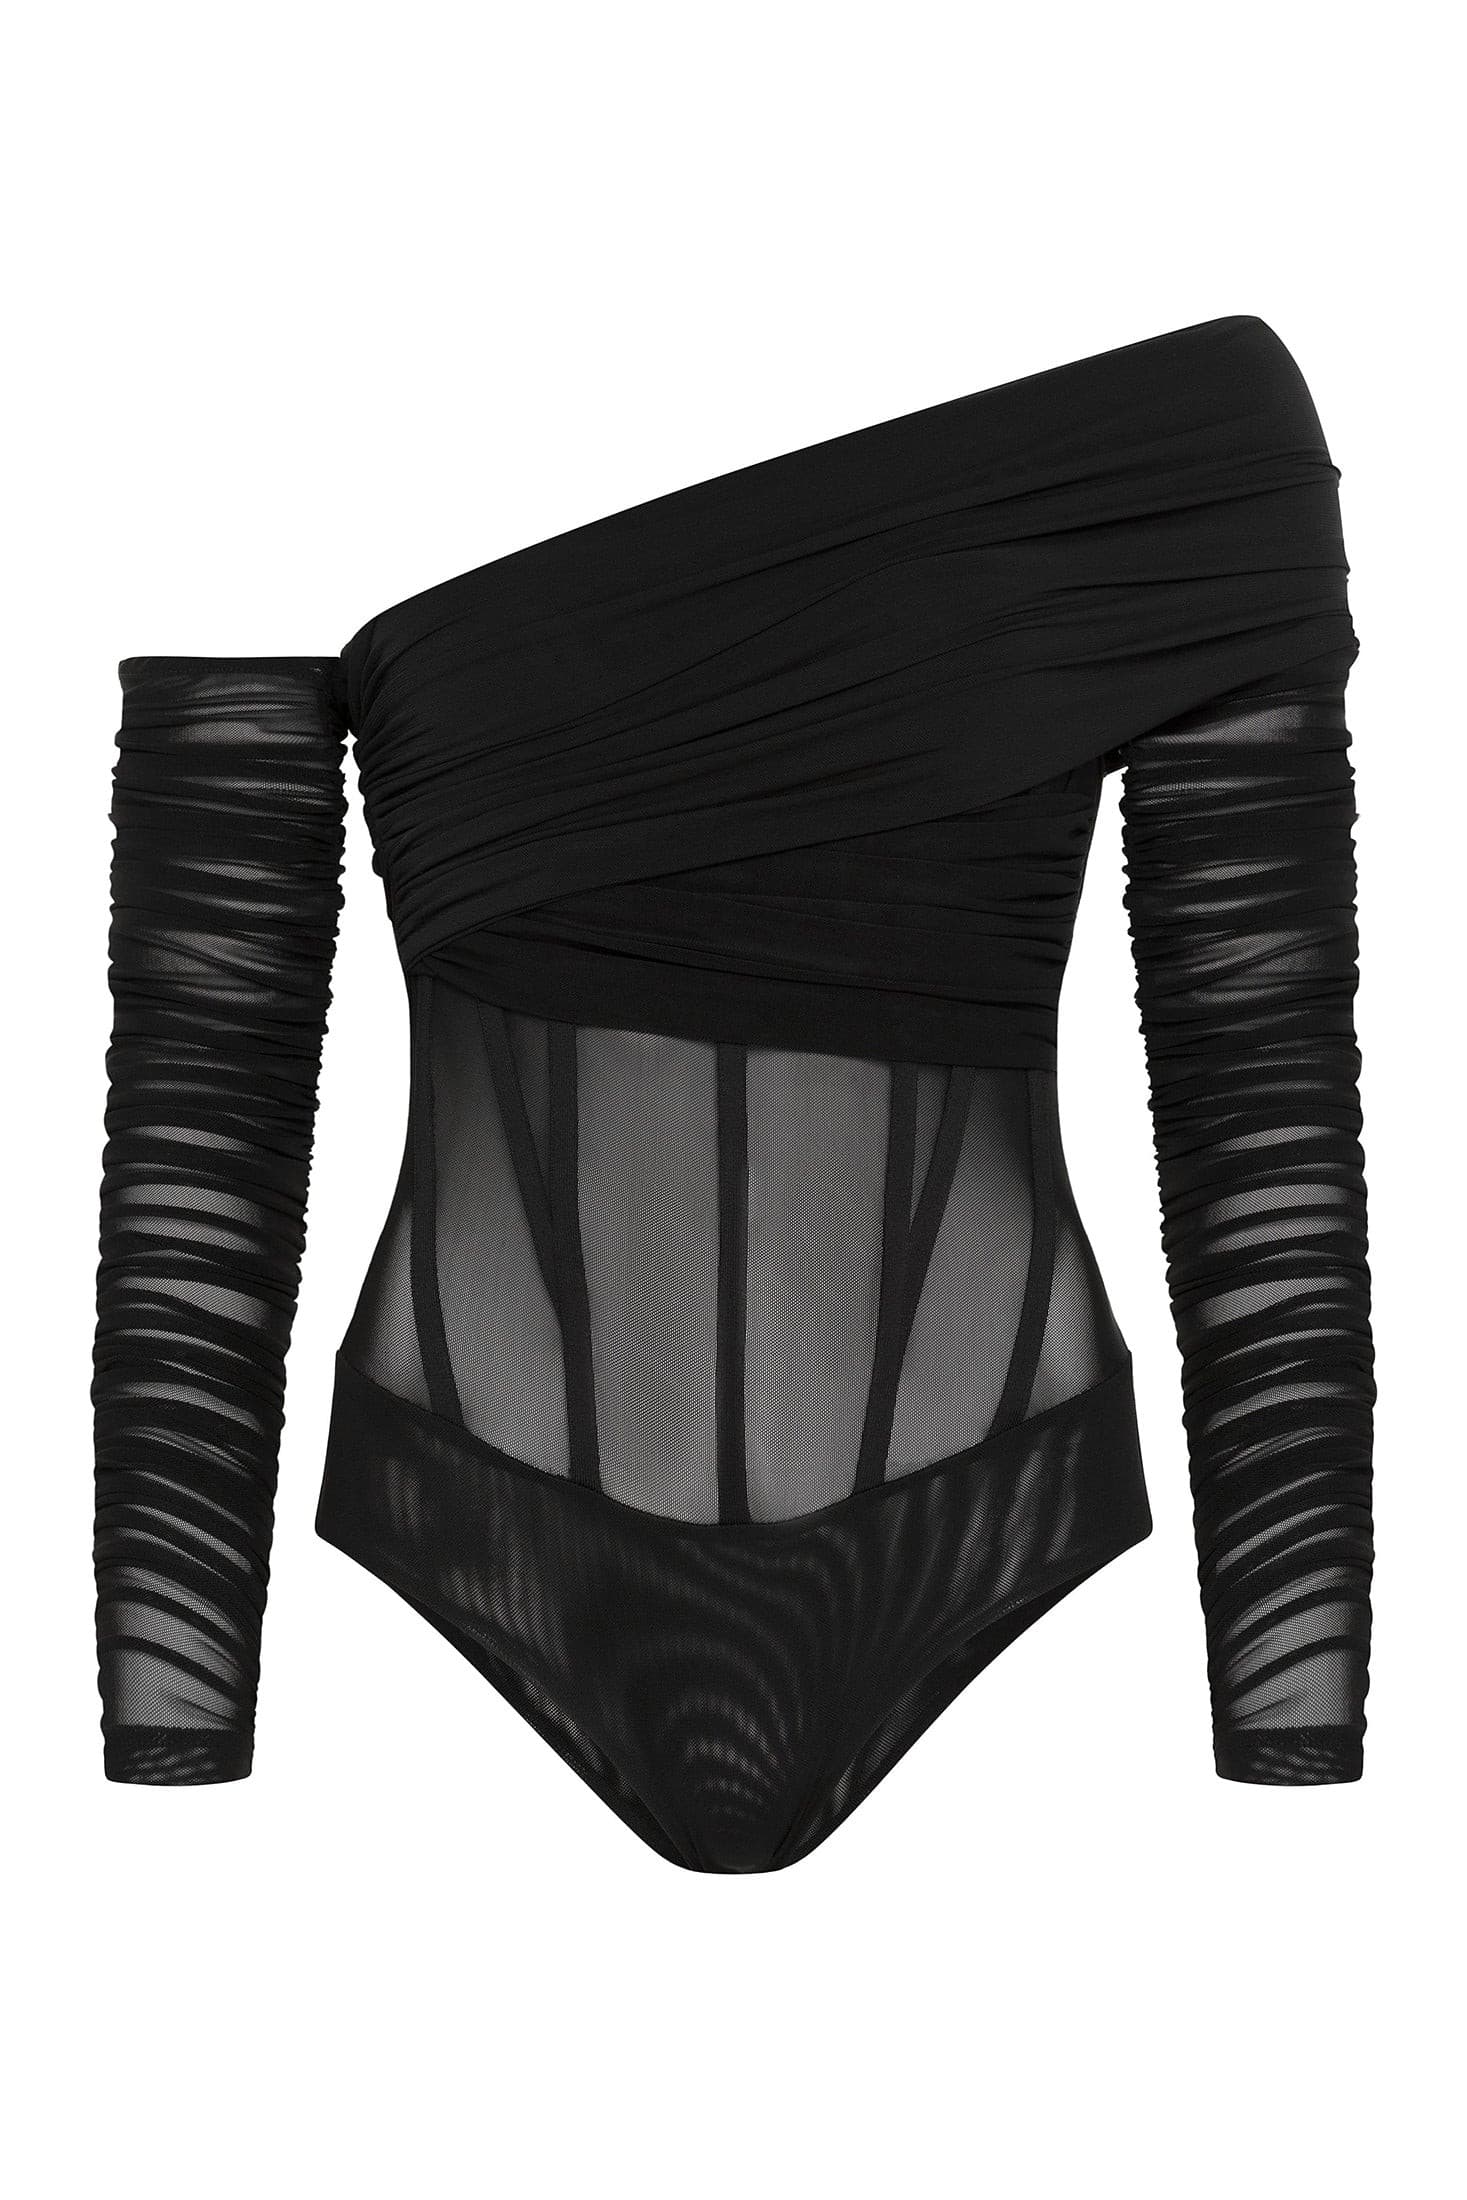 LEAU - Bardot Bustier Corset Mesh Bodysuit in Black.